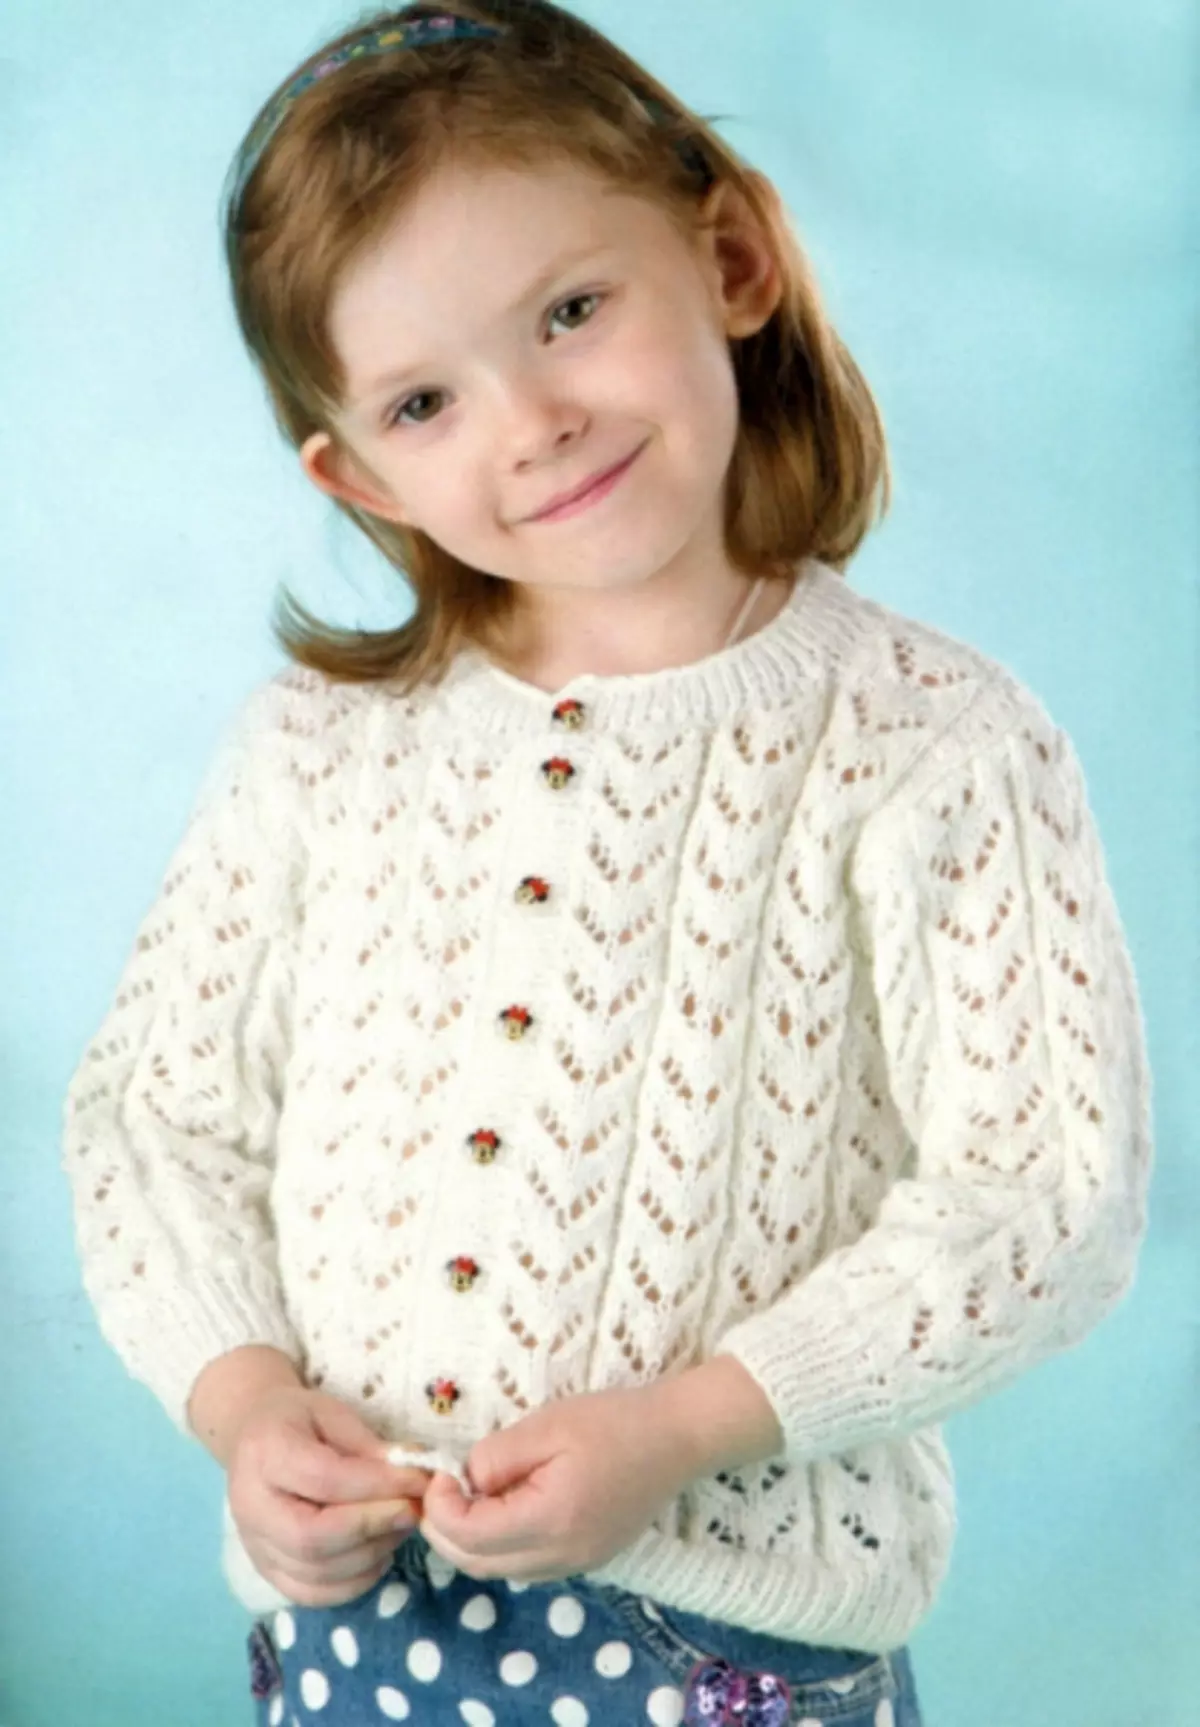 Տրիկոտաժե սվիտեր աղջկա համար տրիկոտաժային ասեղներ. Ընտրանքներ աղջկա համար 2 տարի, Openwork Blouse- ը դա արեք ինքներդ